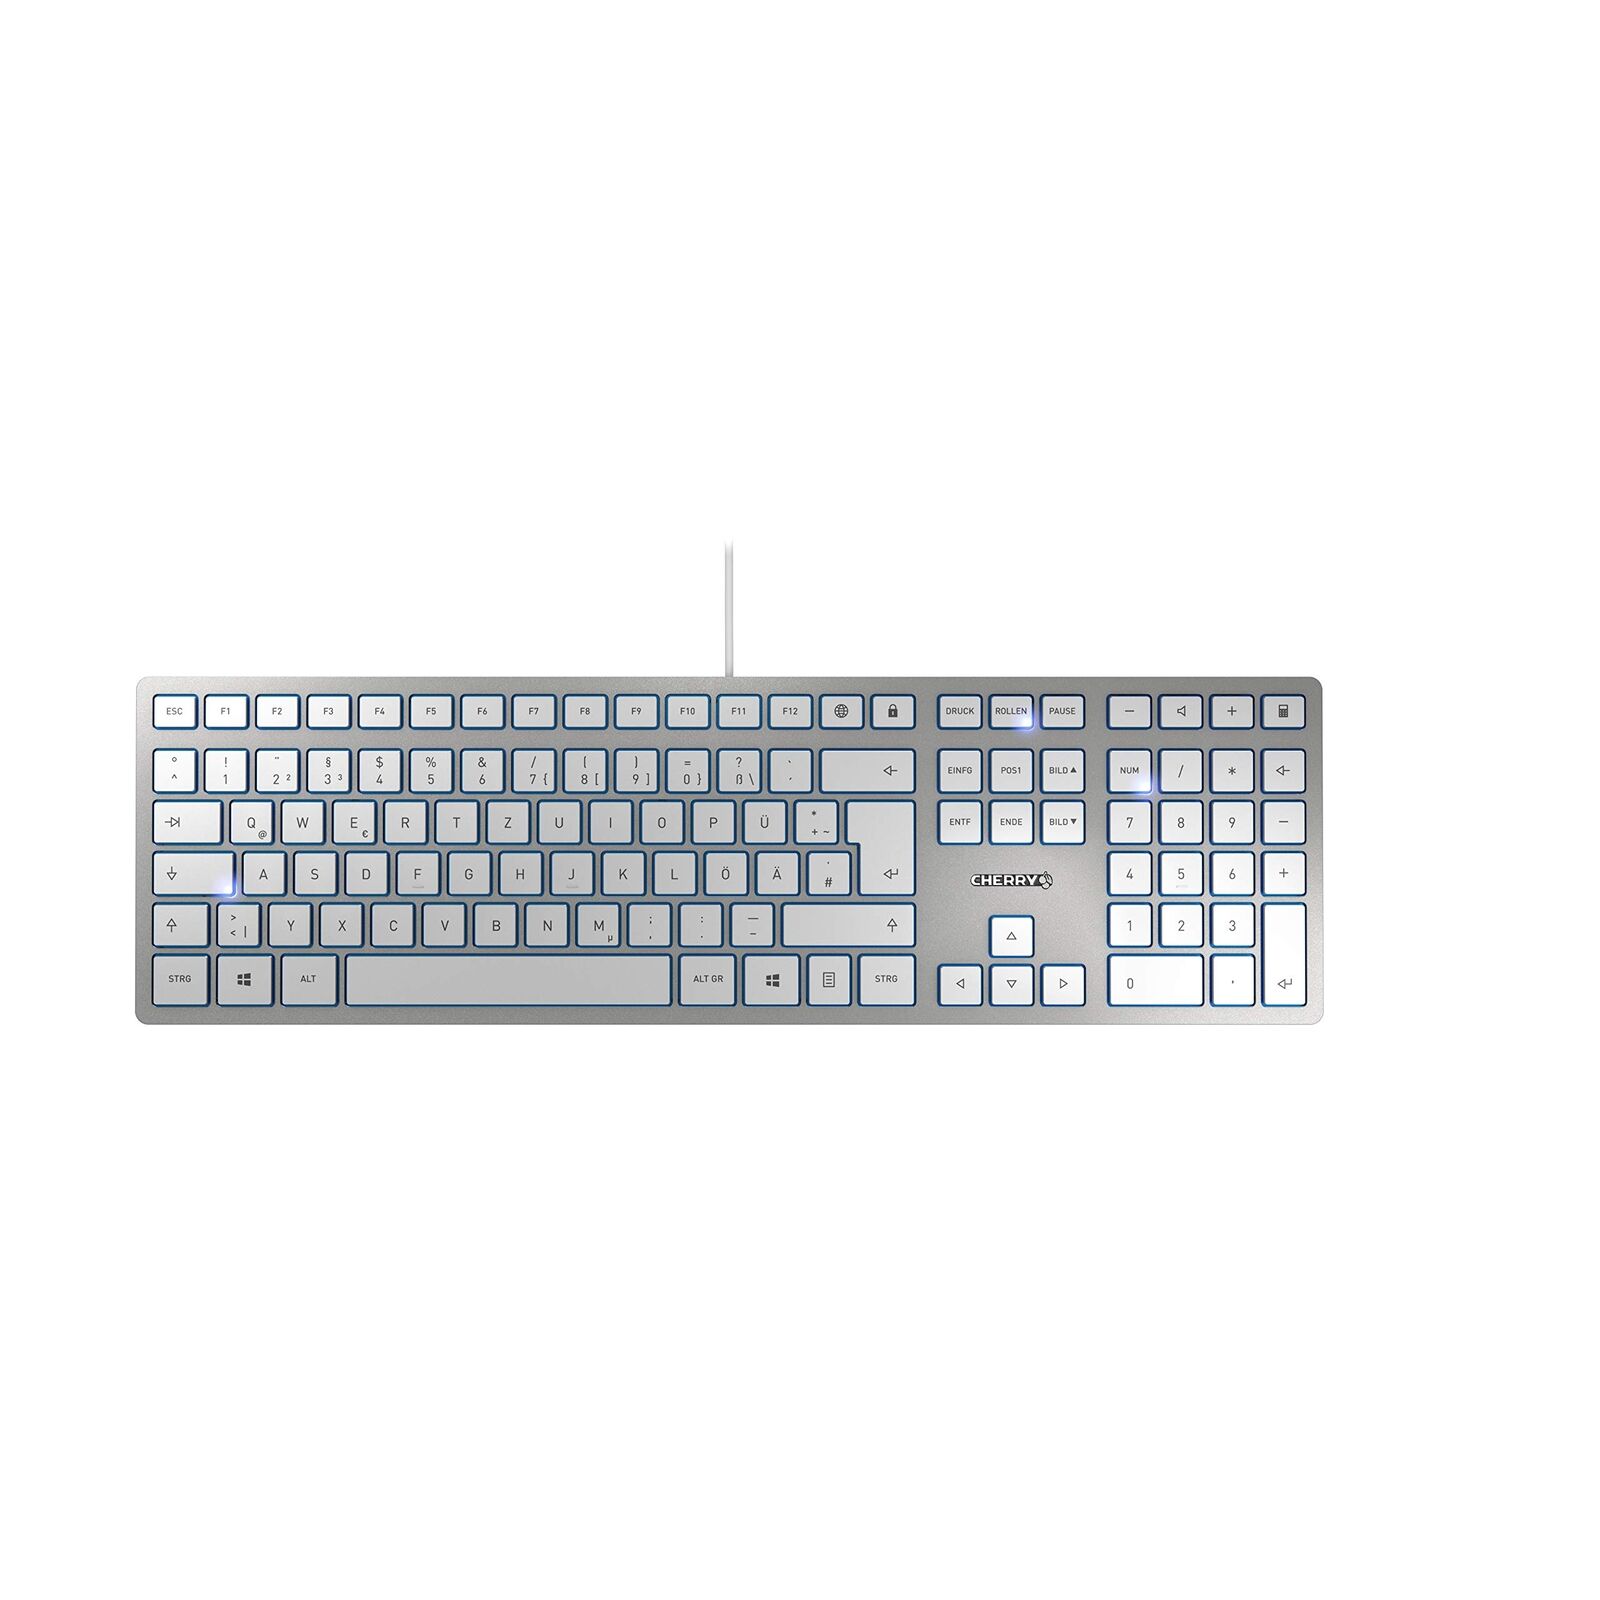 Cherry KC 6000 SLIM PC / Mac, Keyboard German layout - QWERTZ silver